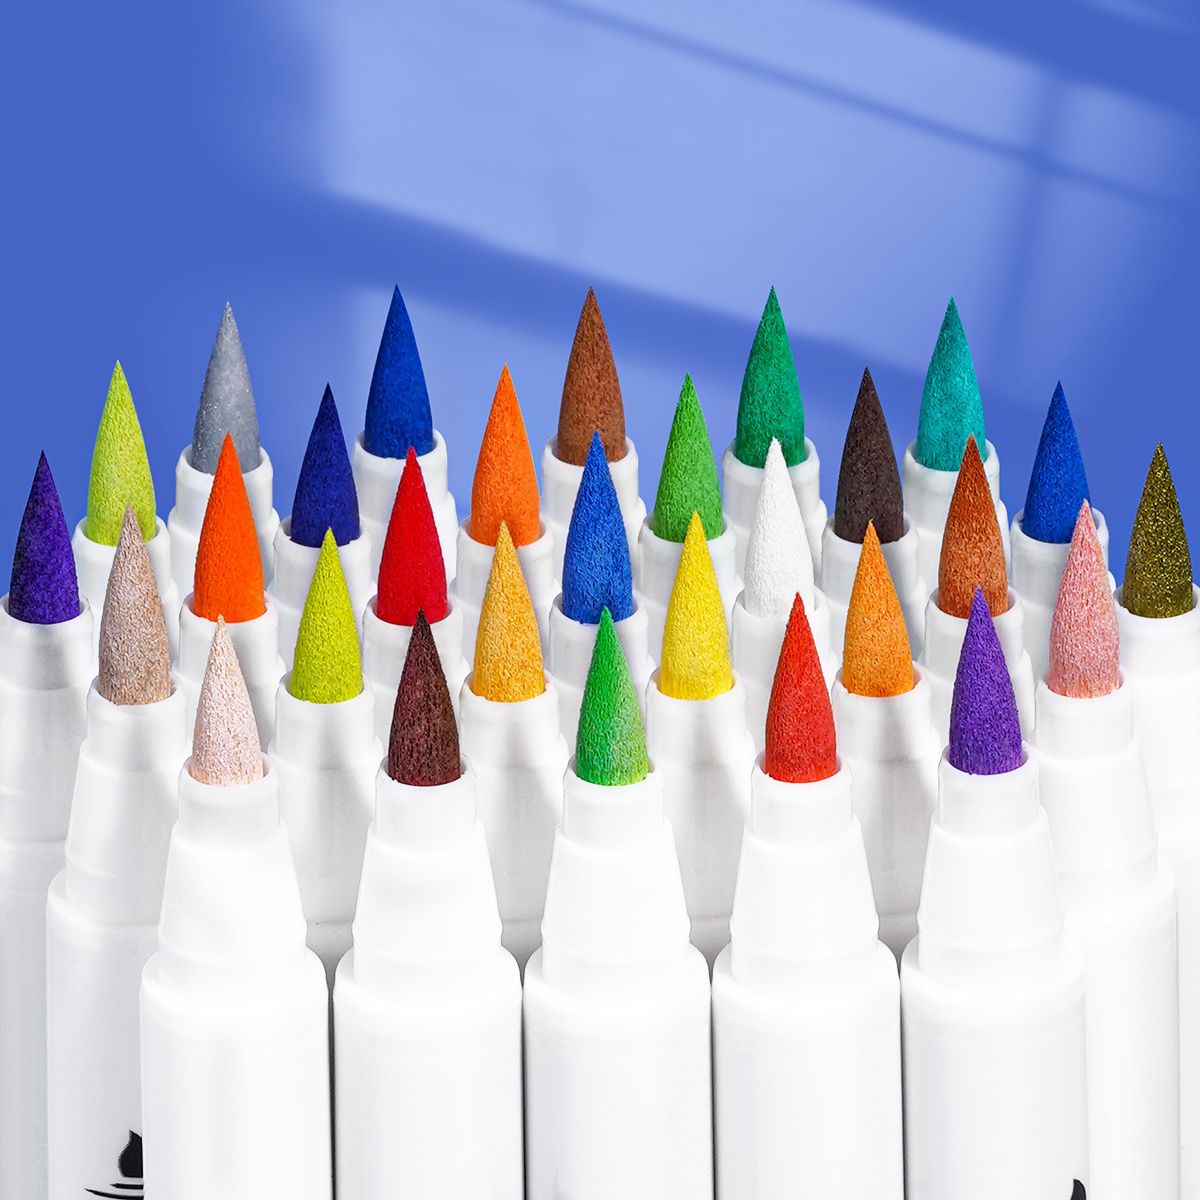  Arrtx 30 Colors Acrylic Paint Pens for Rock Painting